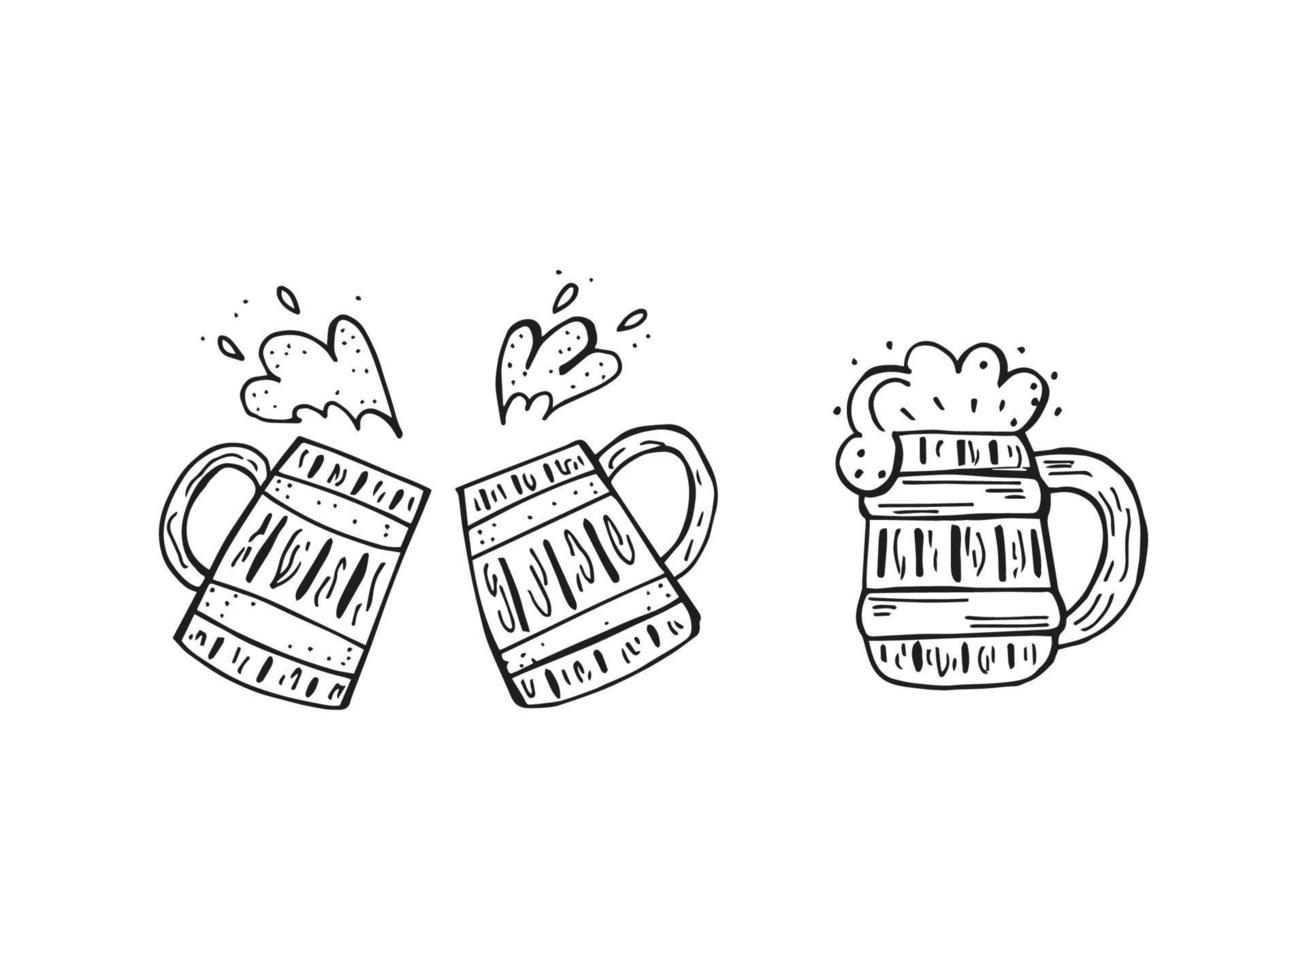 oktoberfest 2022 - bierfestival. handgetekende set doodle elementen. Duitse traditionele vakantie. schets van een houten Bierpul op een witte achtergrond. vector